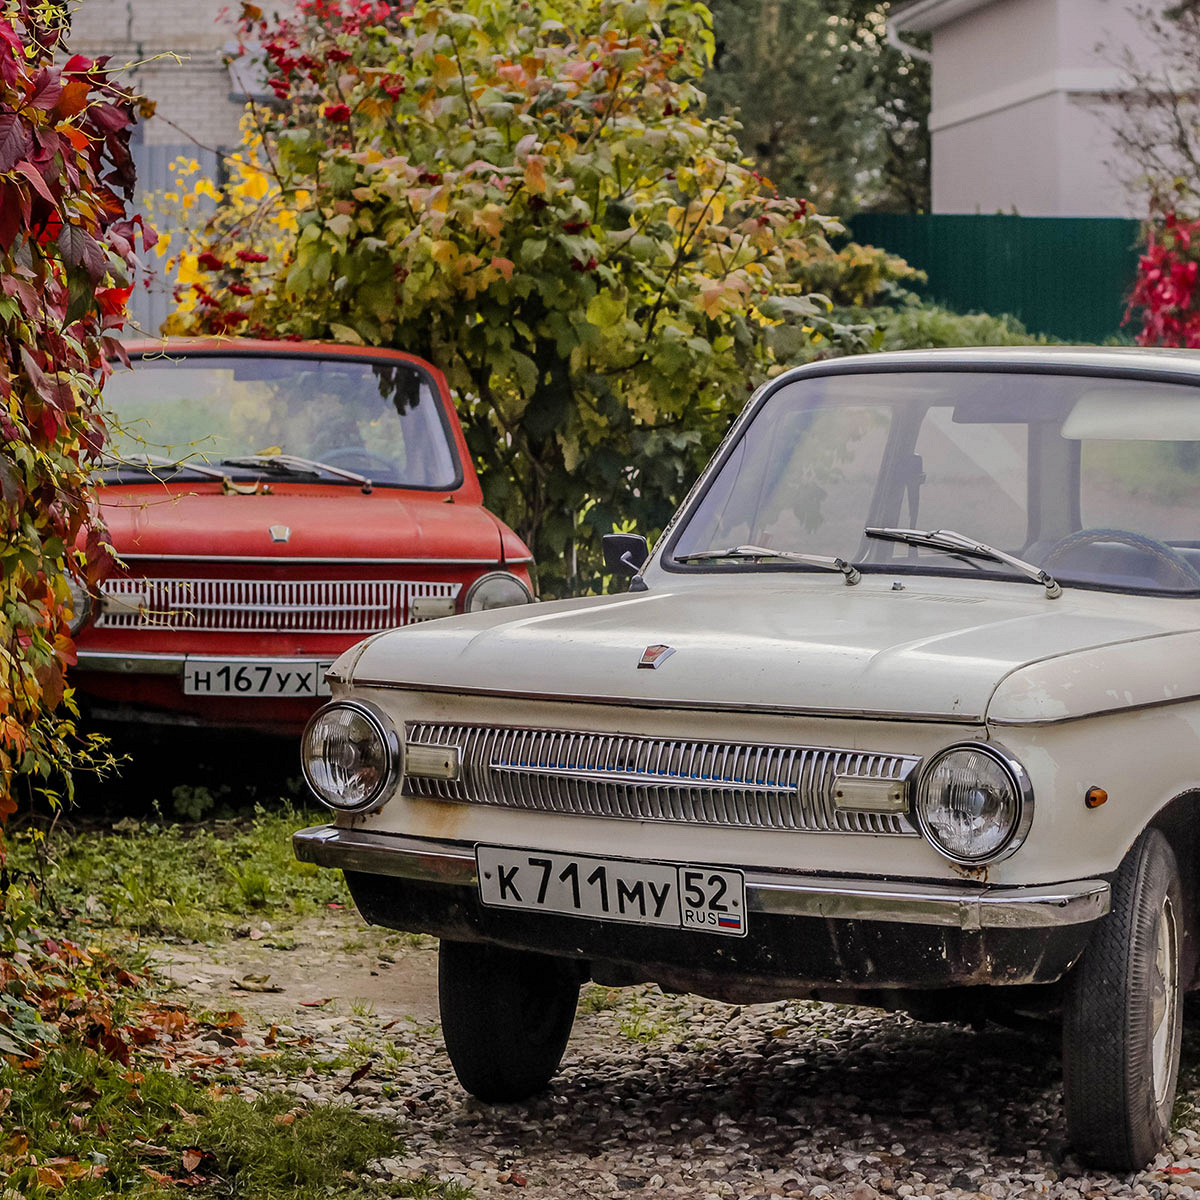 Познакомьтесь с девушками, которые реставрируют советские автомобили